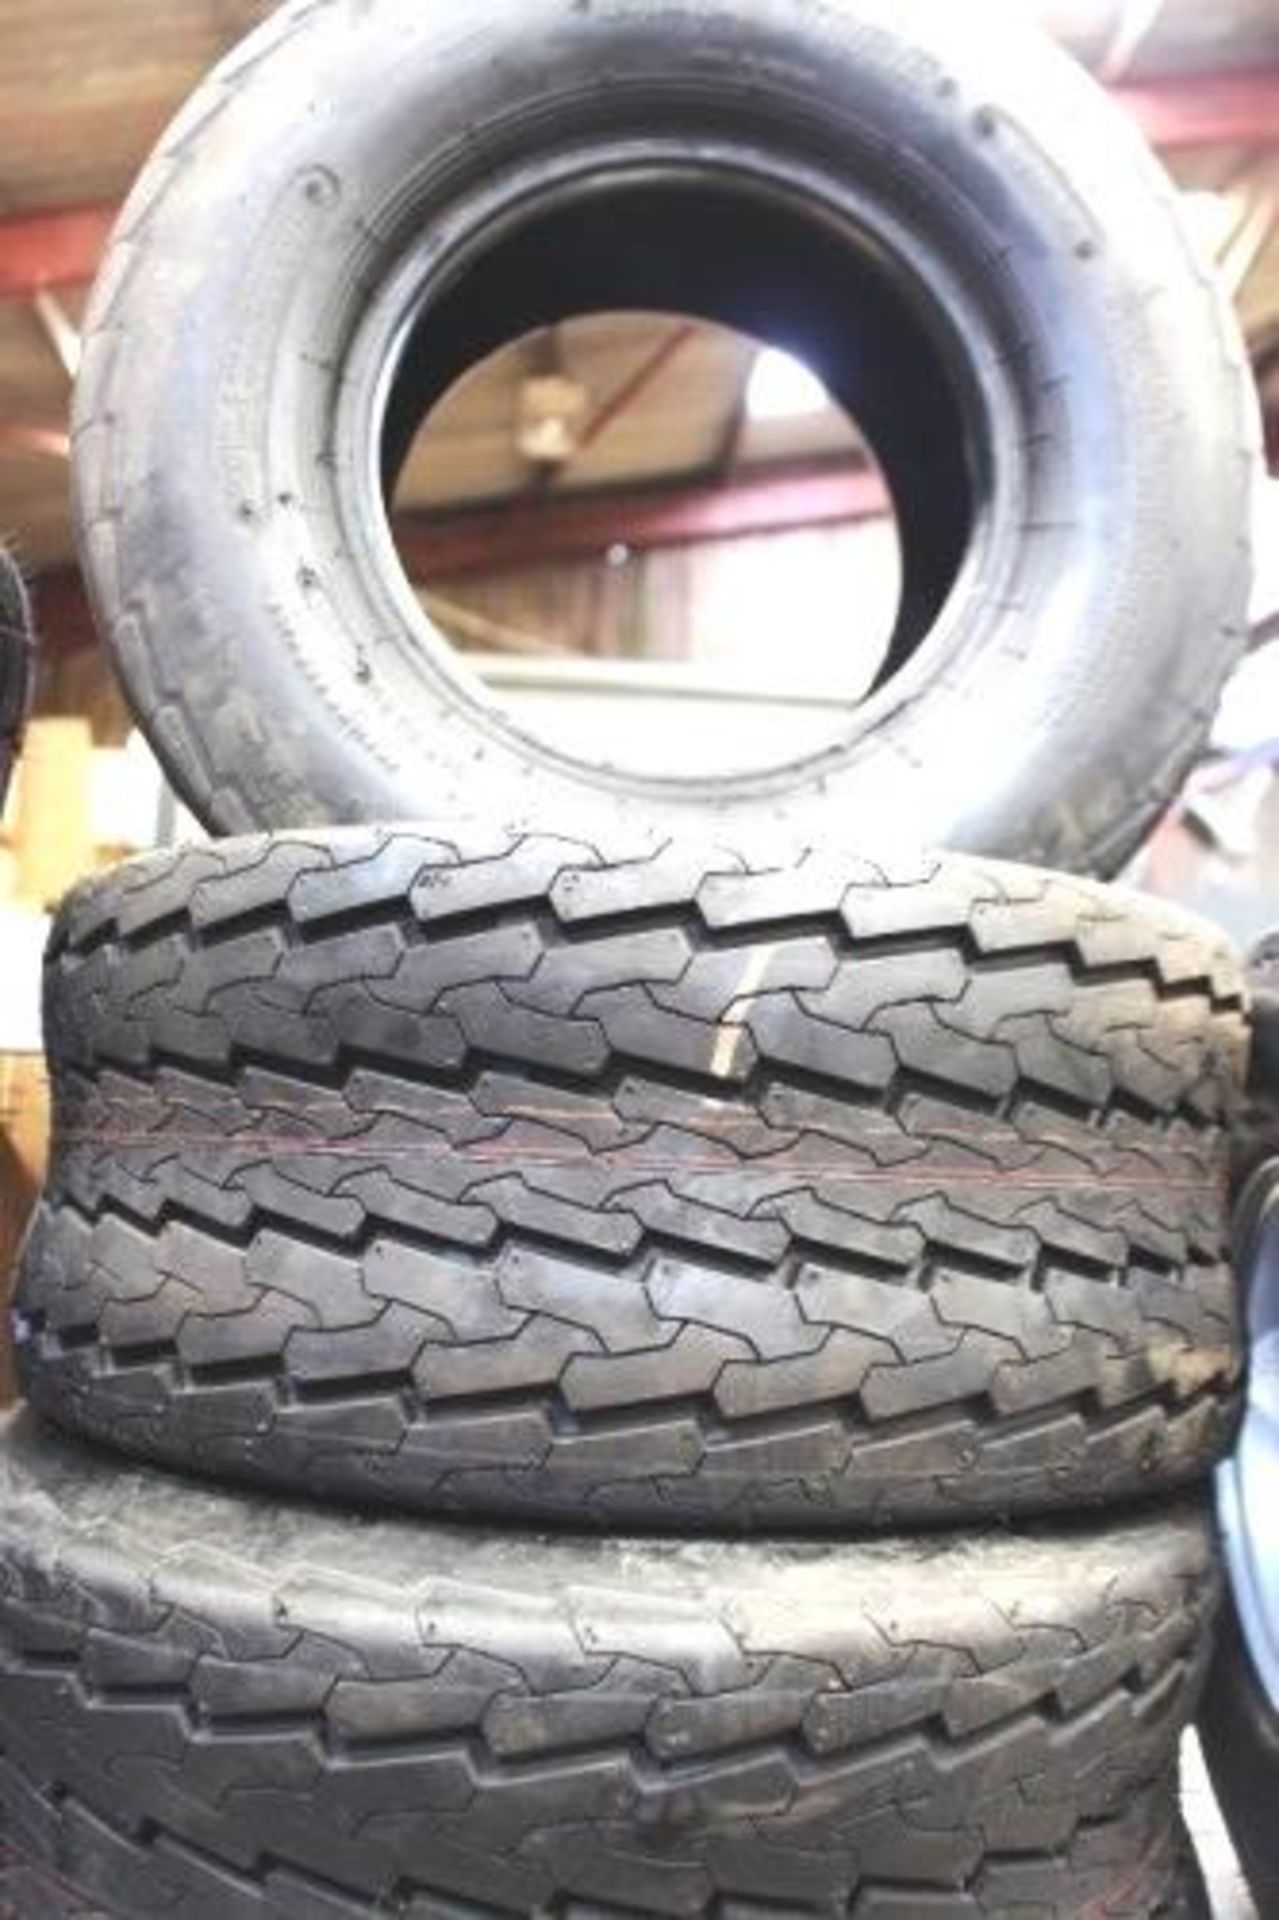 3 x Deli tyres, 2.05x8.0-10 - New (GS10) - Image 3 of 3